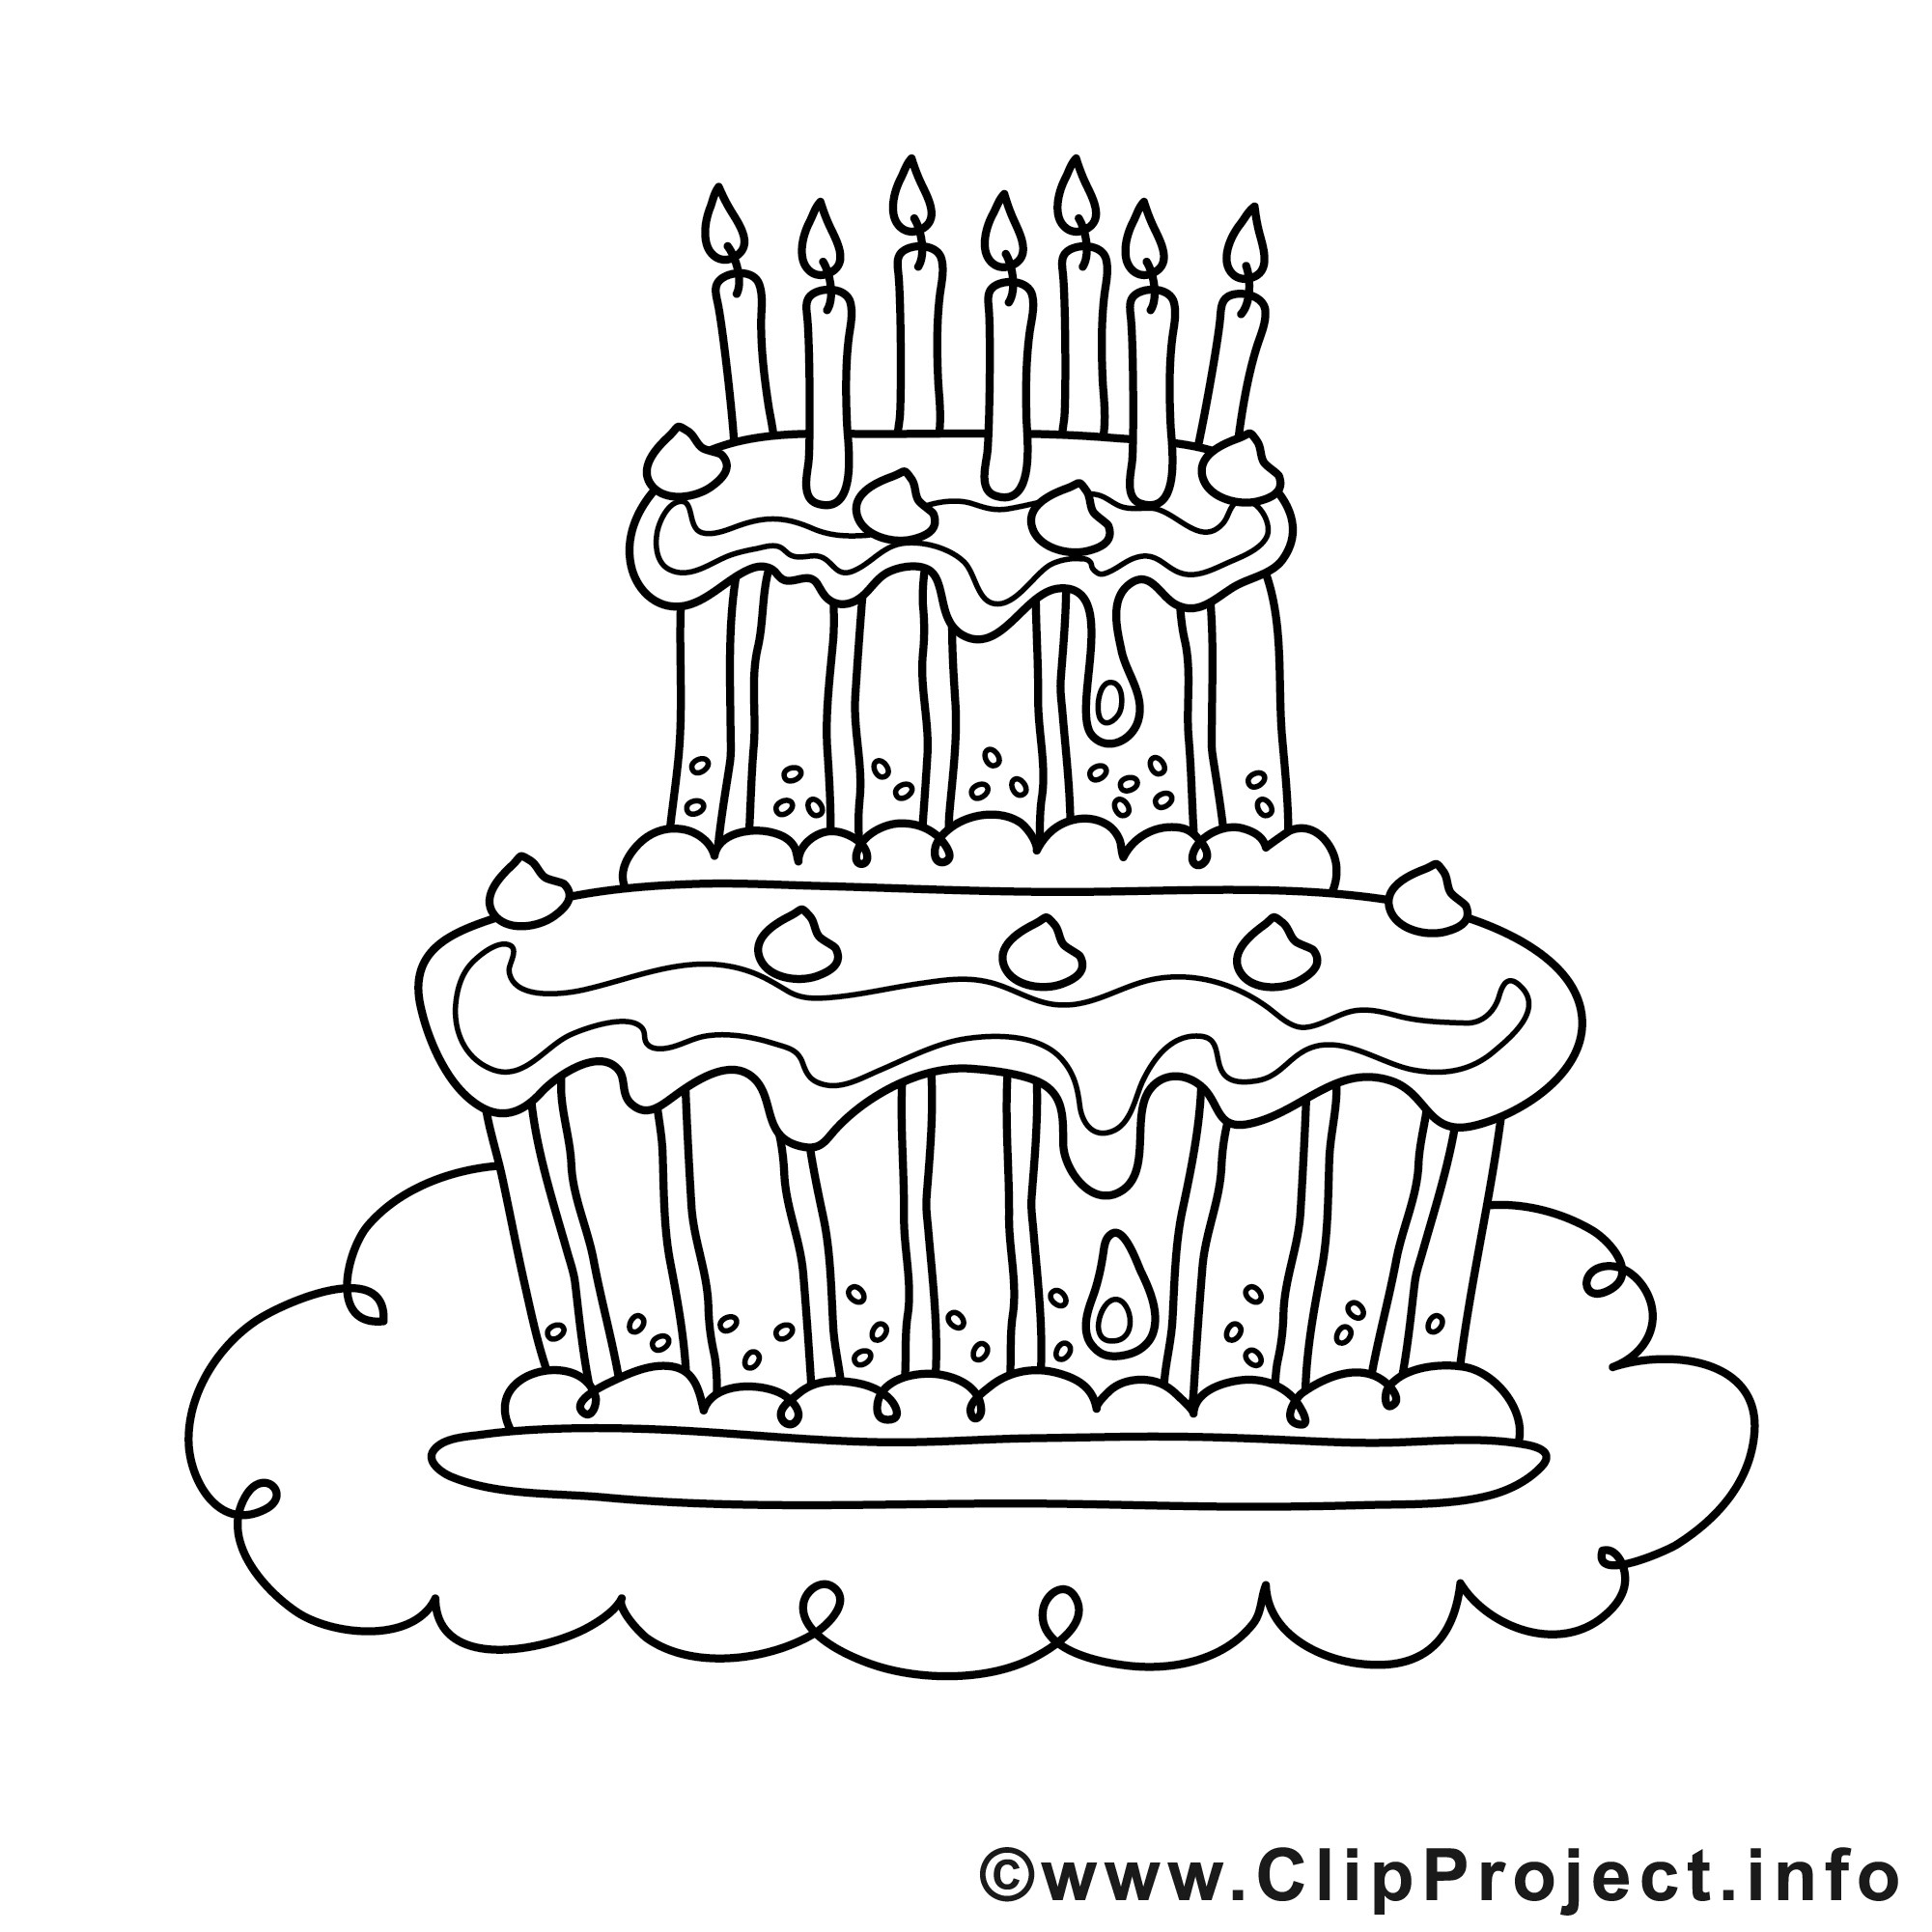 Ausmalbilder Geburtstagstorte
 Kuchen Mit Kerzen Bild Zum Ausmalen Malvorlage